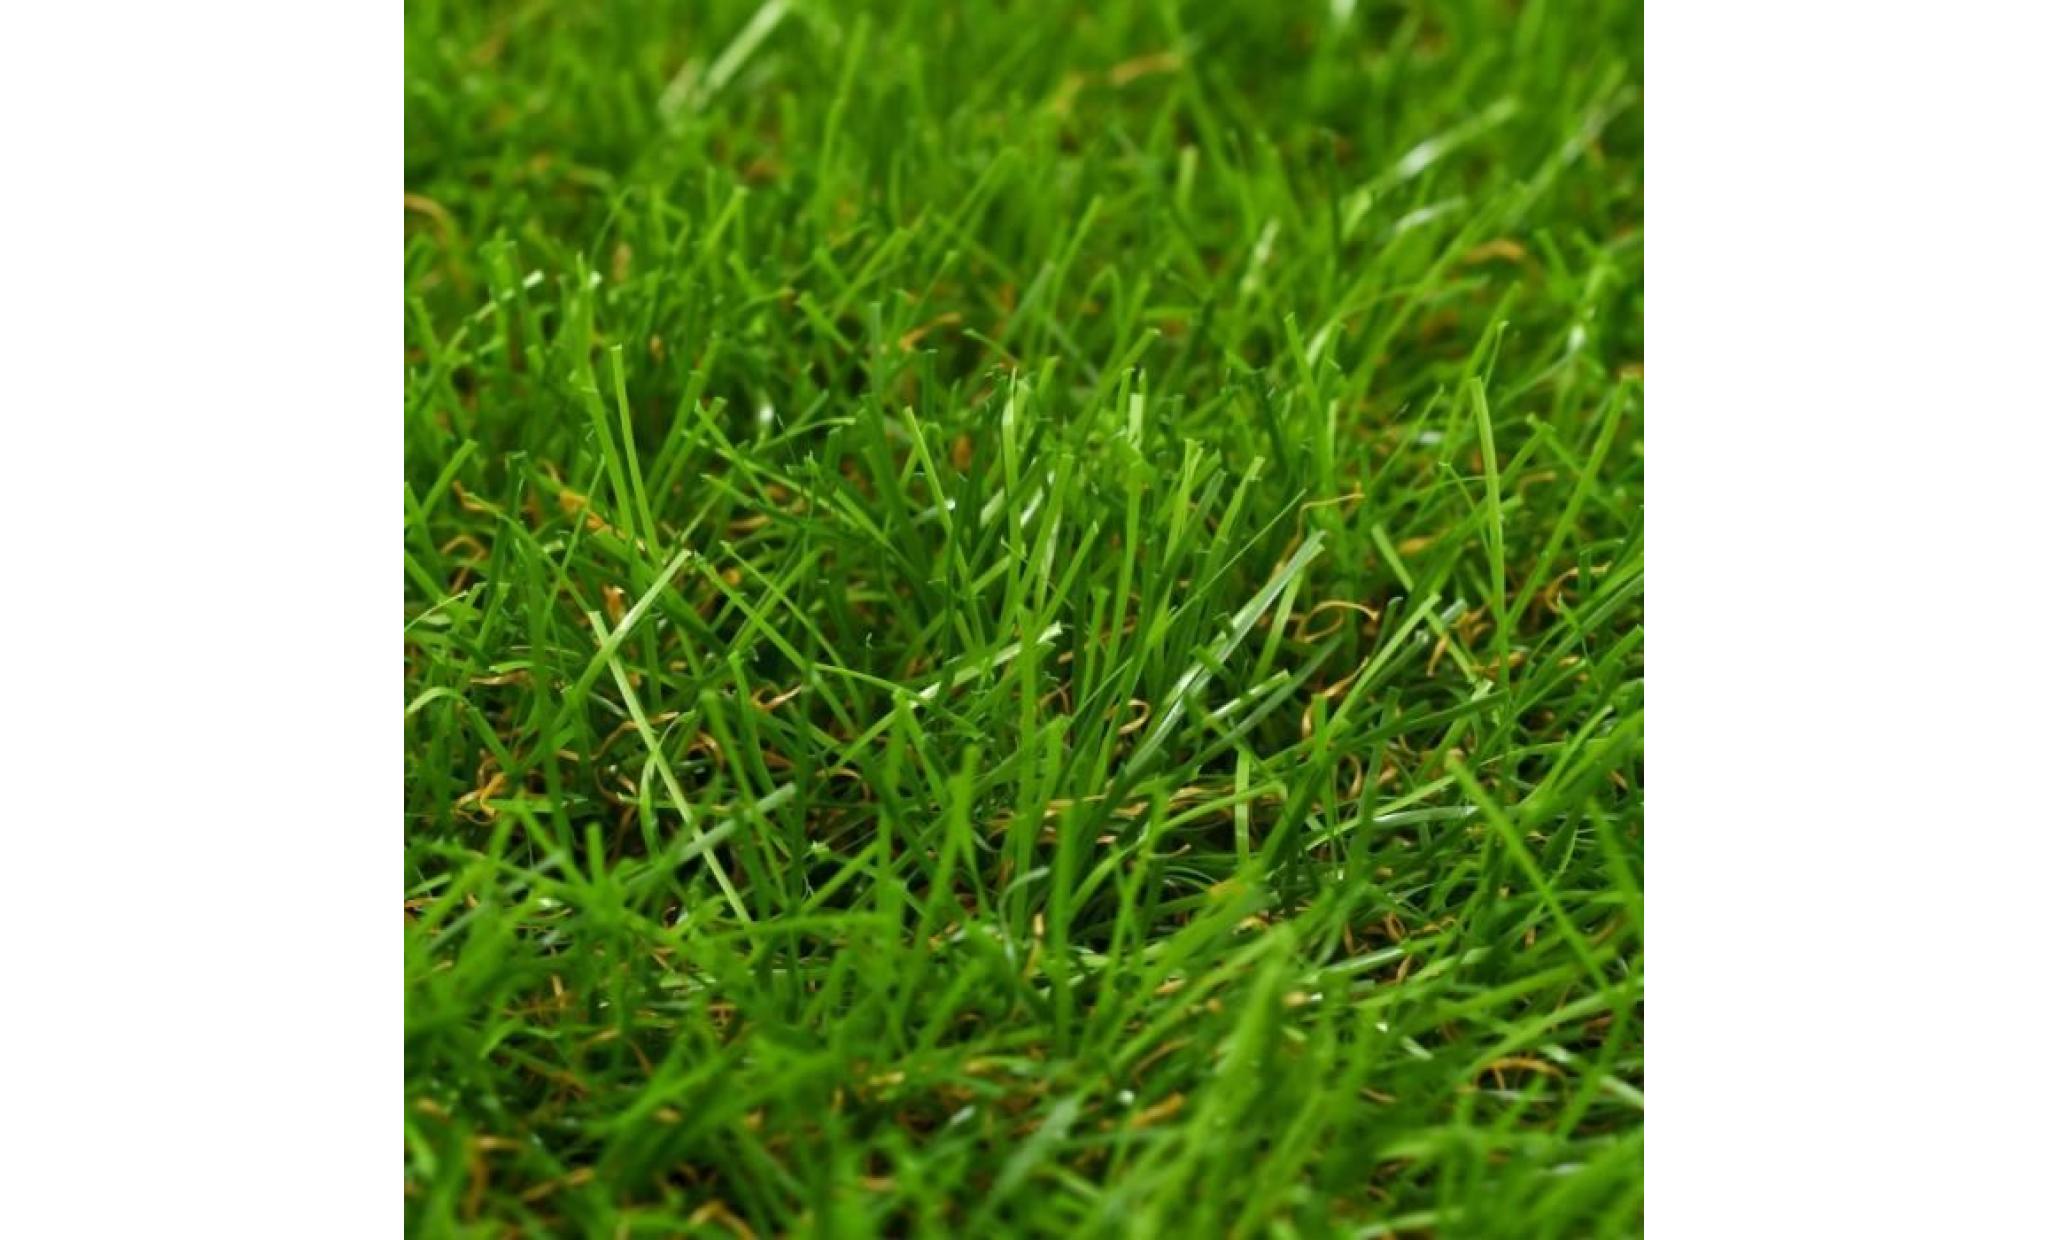 r32 ce gazon artificiel de 40 mm peut vous servir a creer une veritable pelouse, qui necessite un minimum d'entretien, m